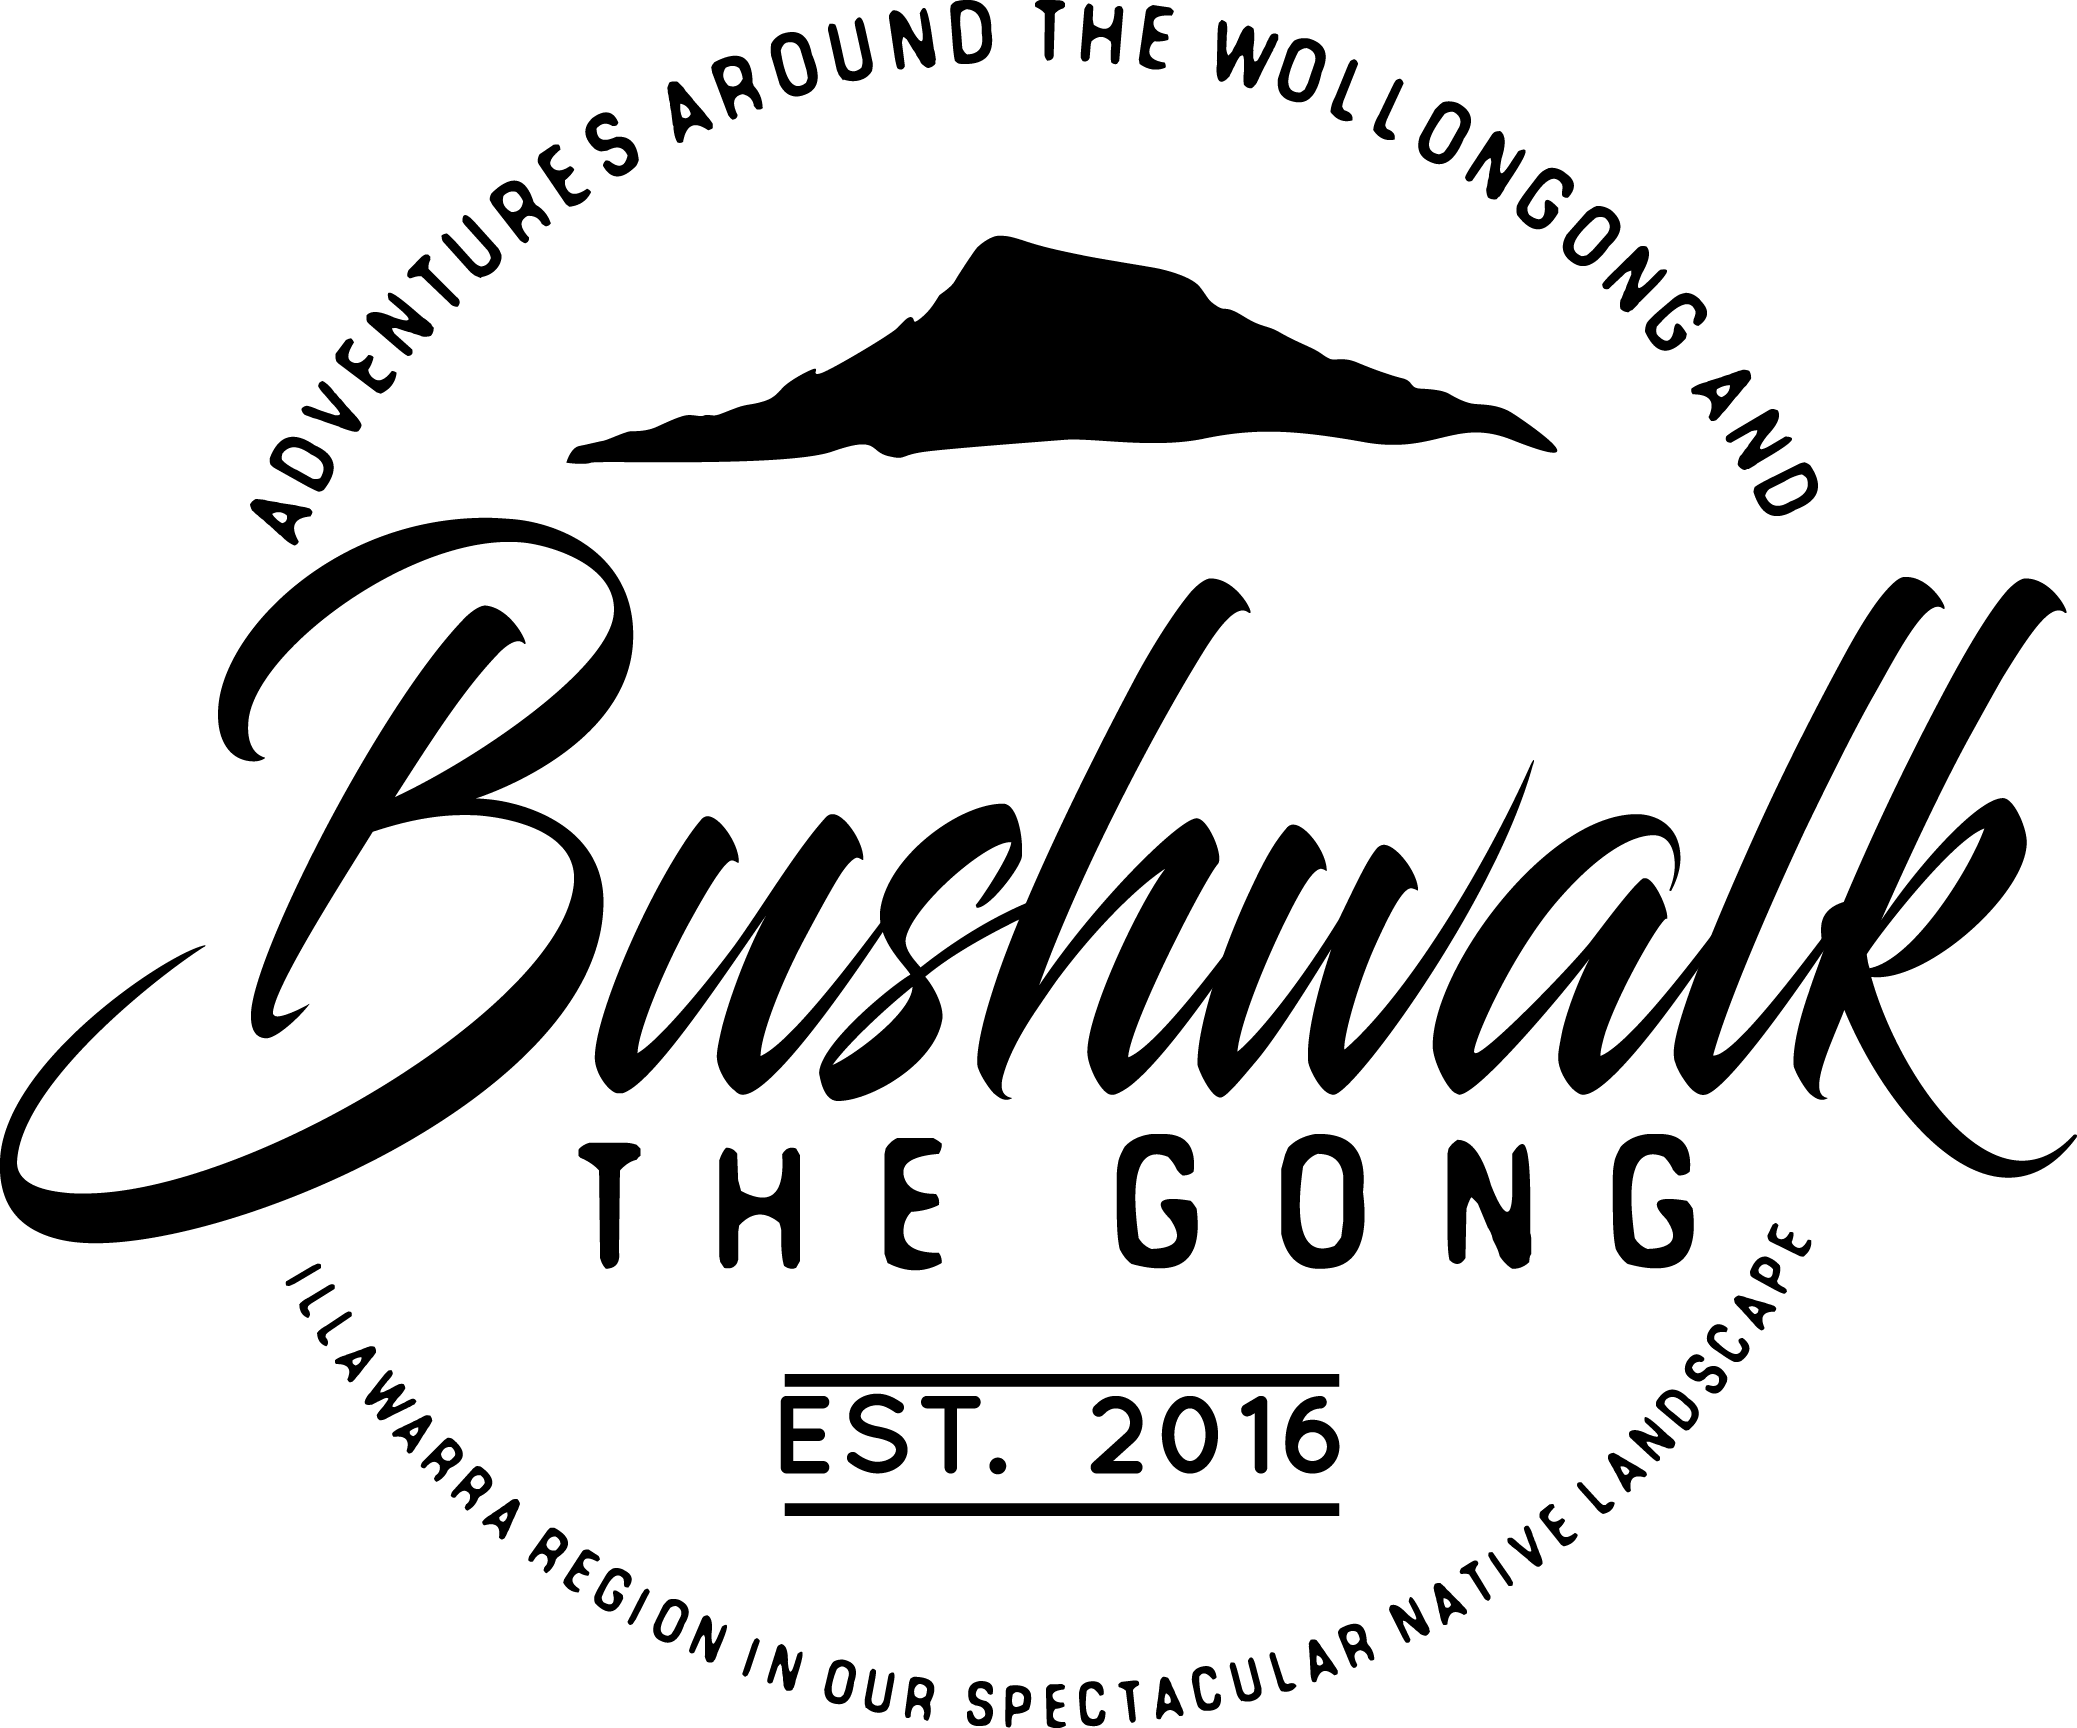 Bushwalk the 'Gong